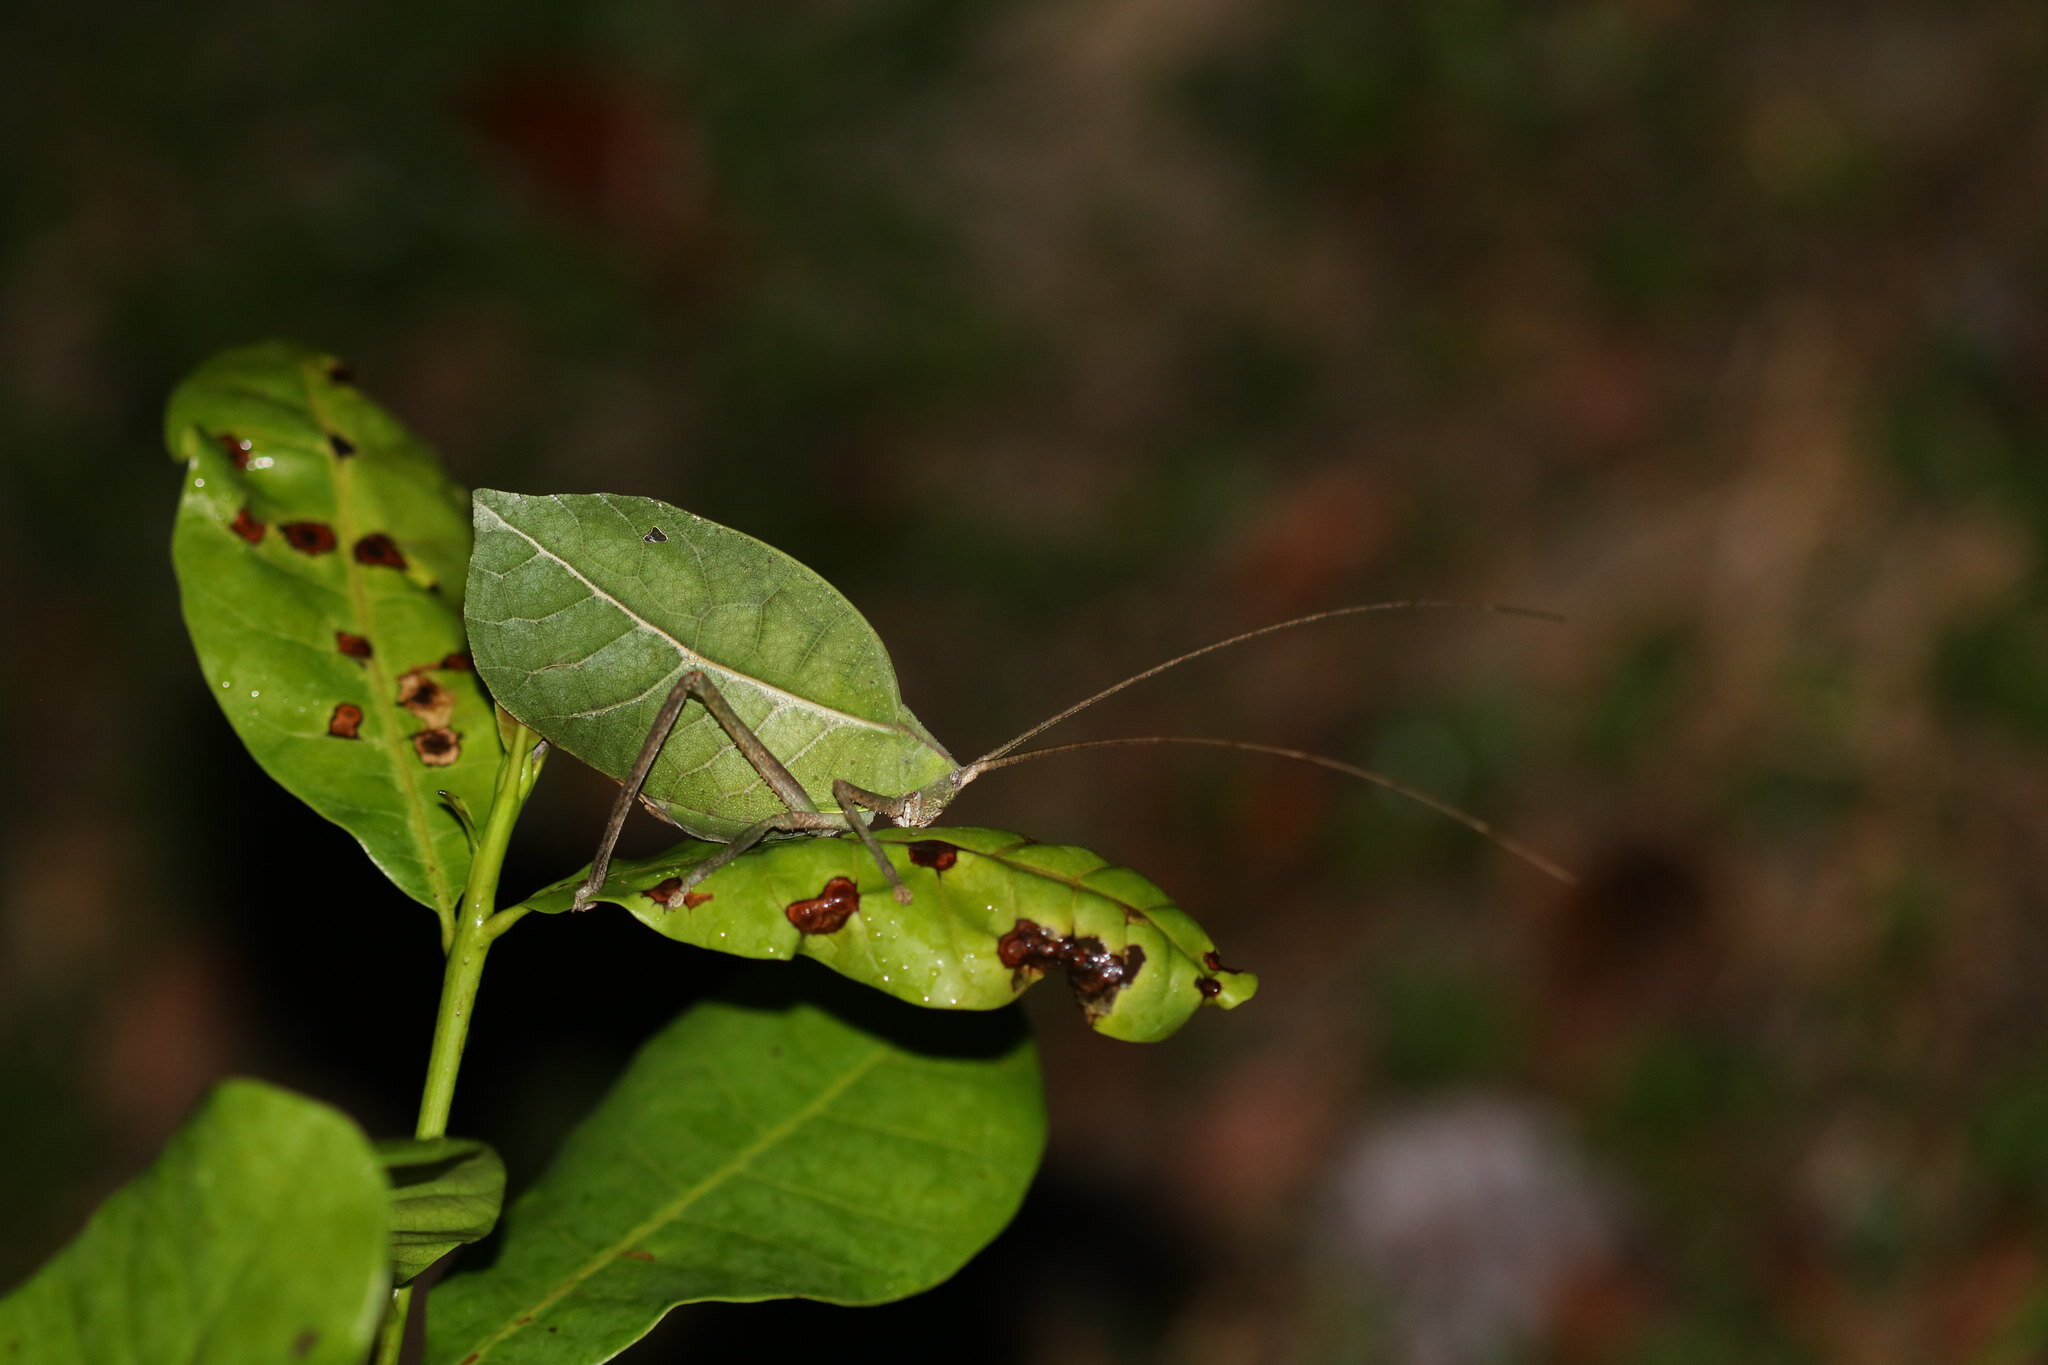 A leaf katydid